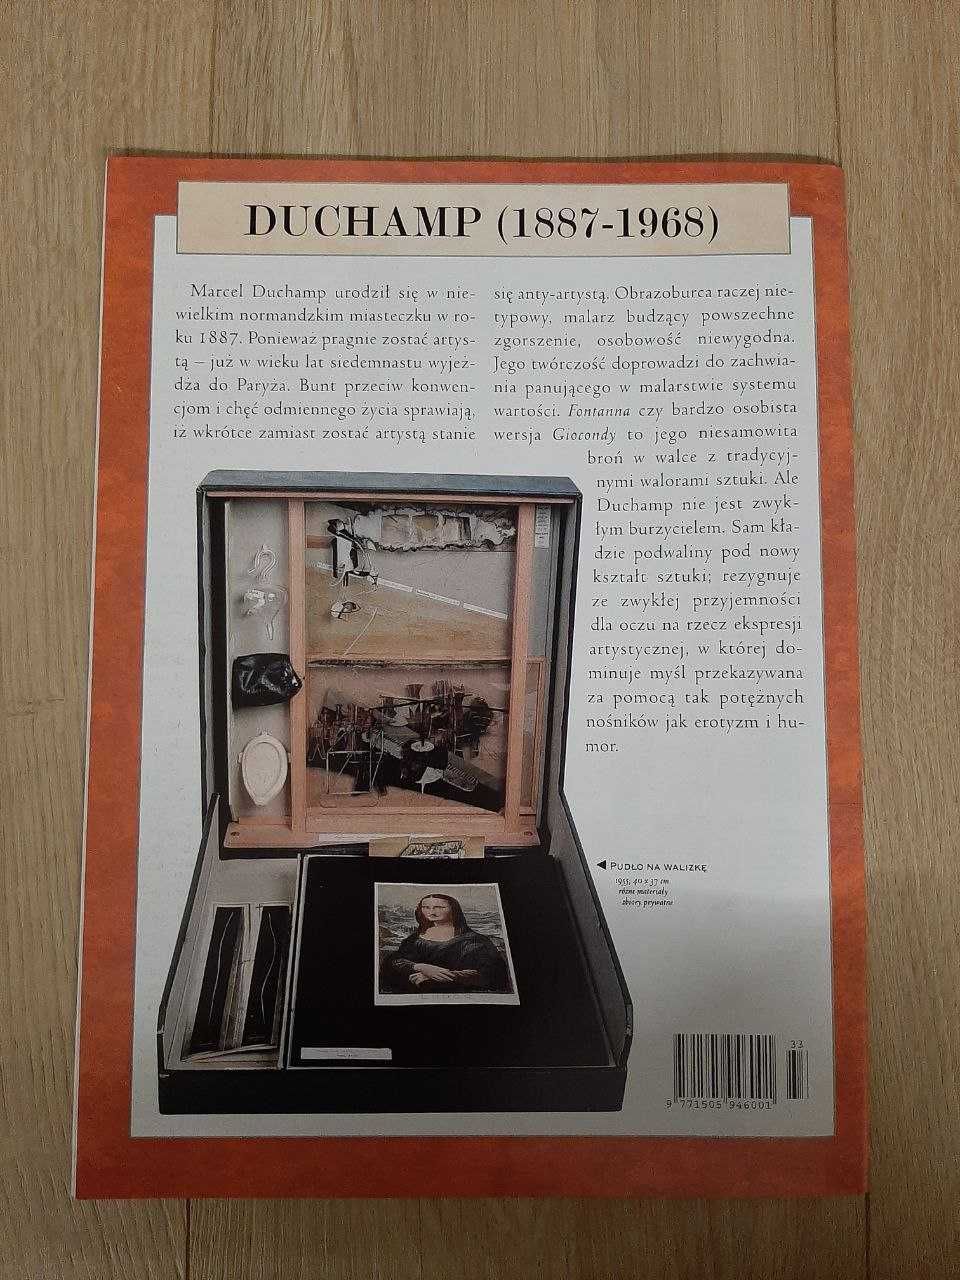 Marcel Duchamp nr 96 - Wielcy malarze